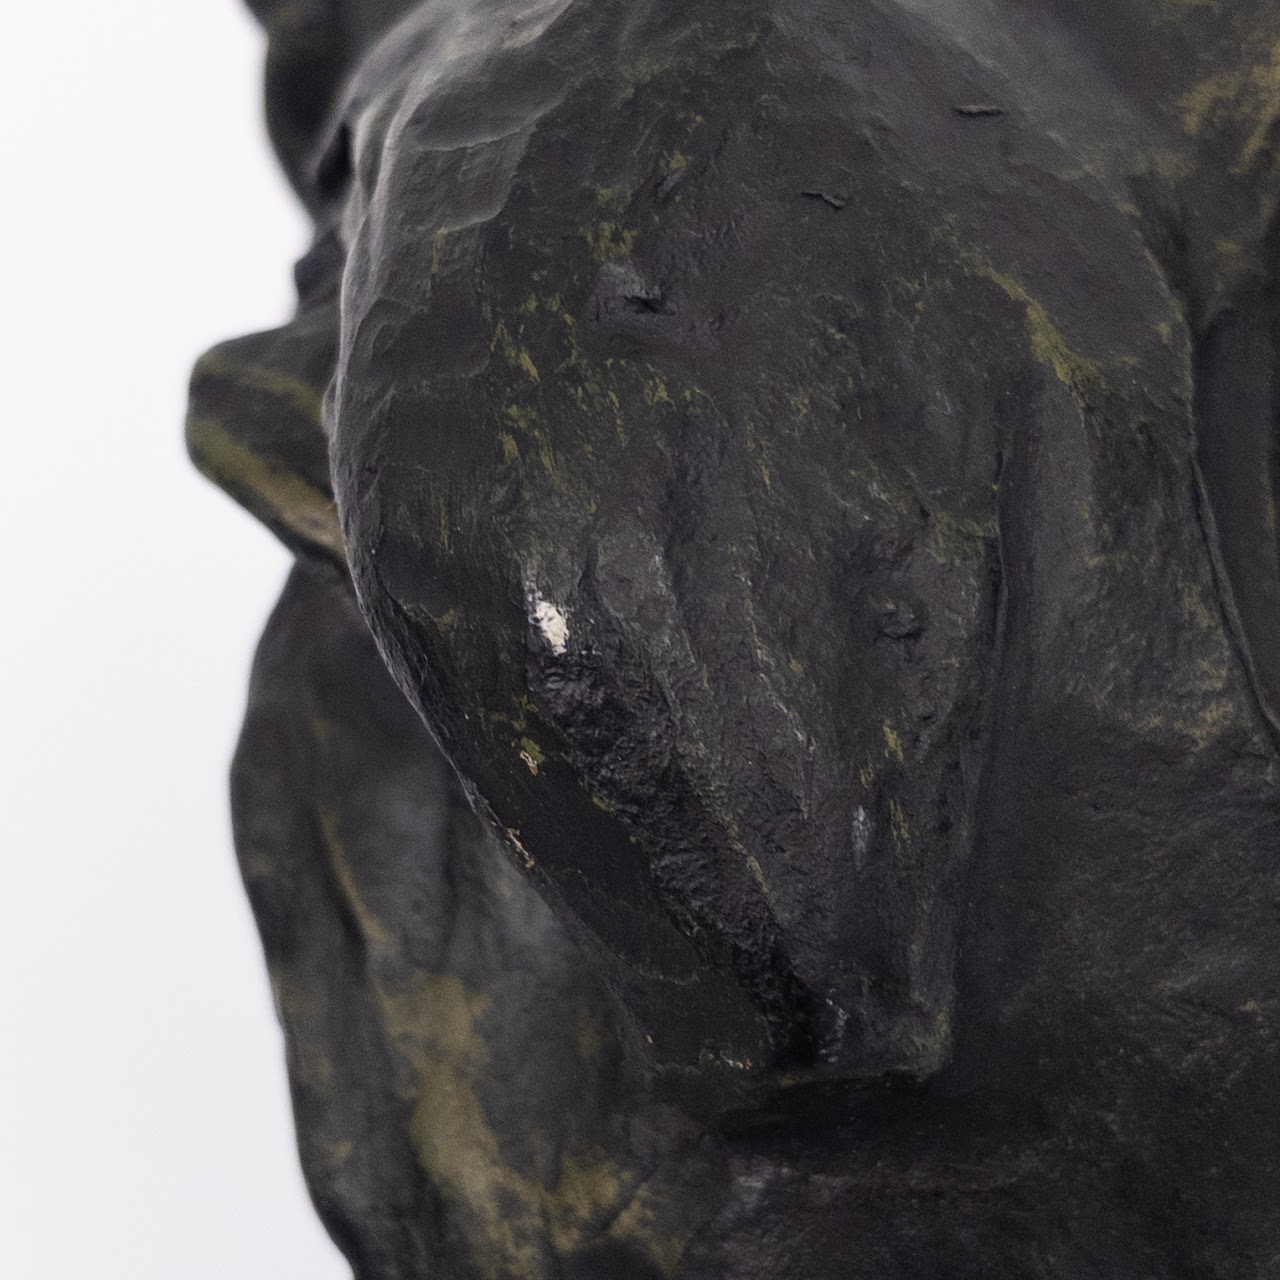 After Auguste Rodin 'Honore de Balzac' Plaster Bust, Alexis Rudier Fondeur, Paris